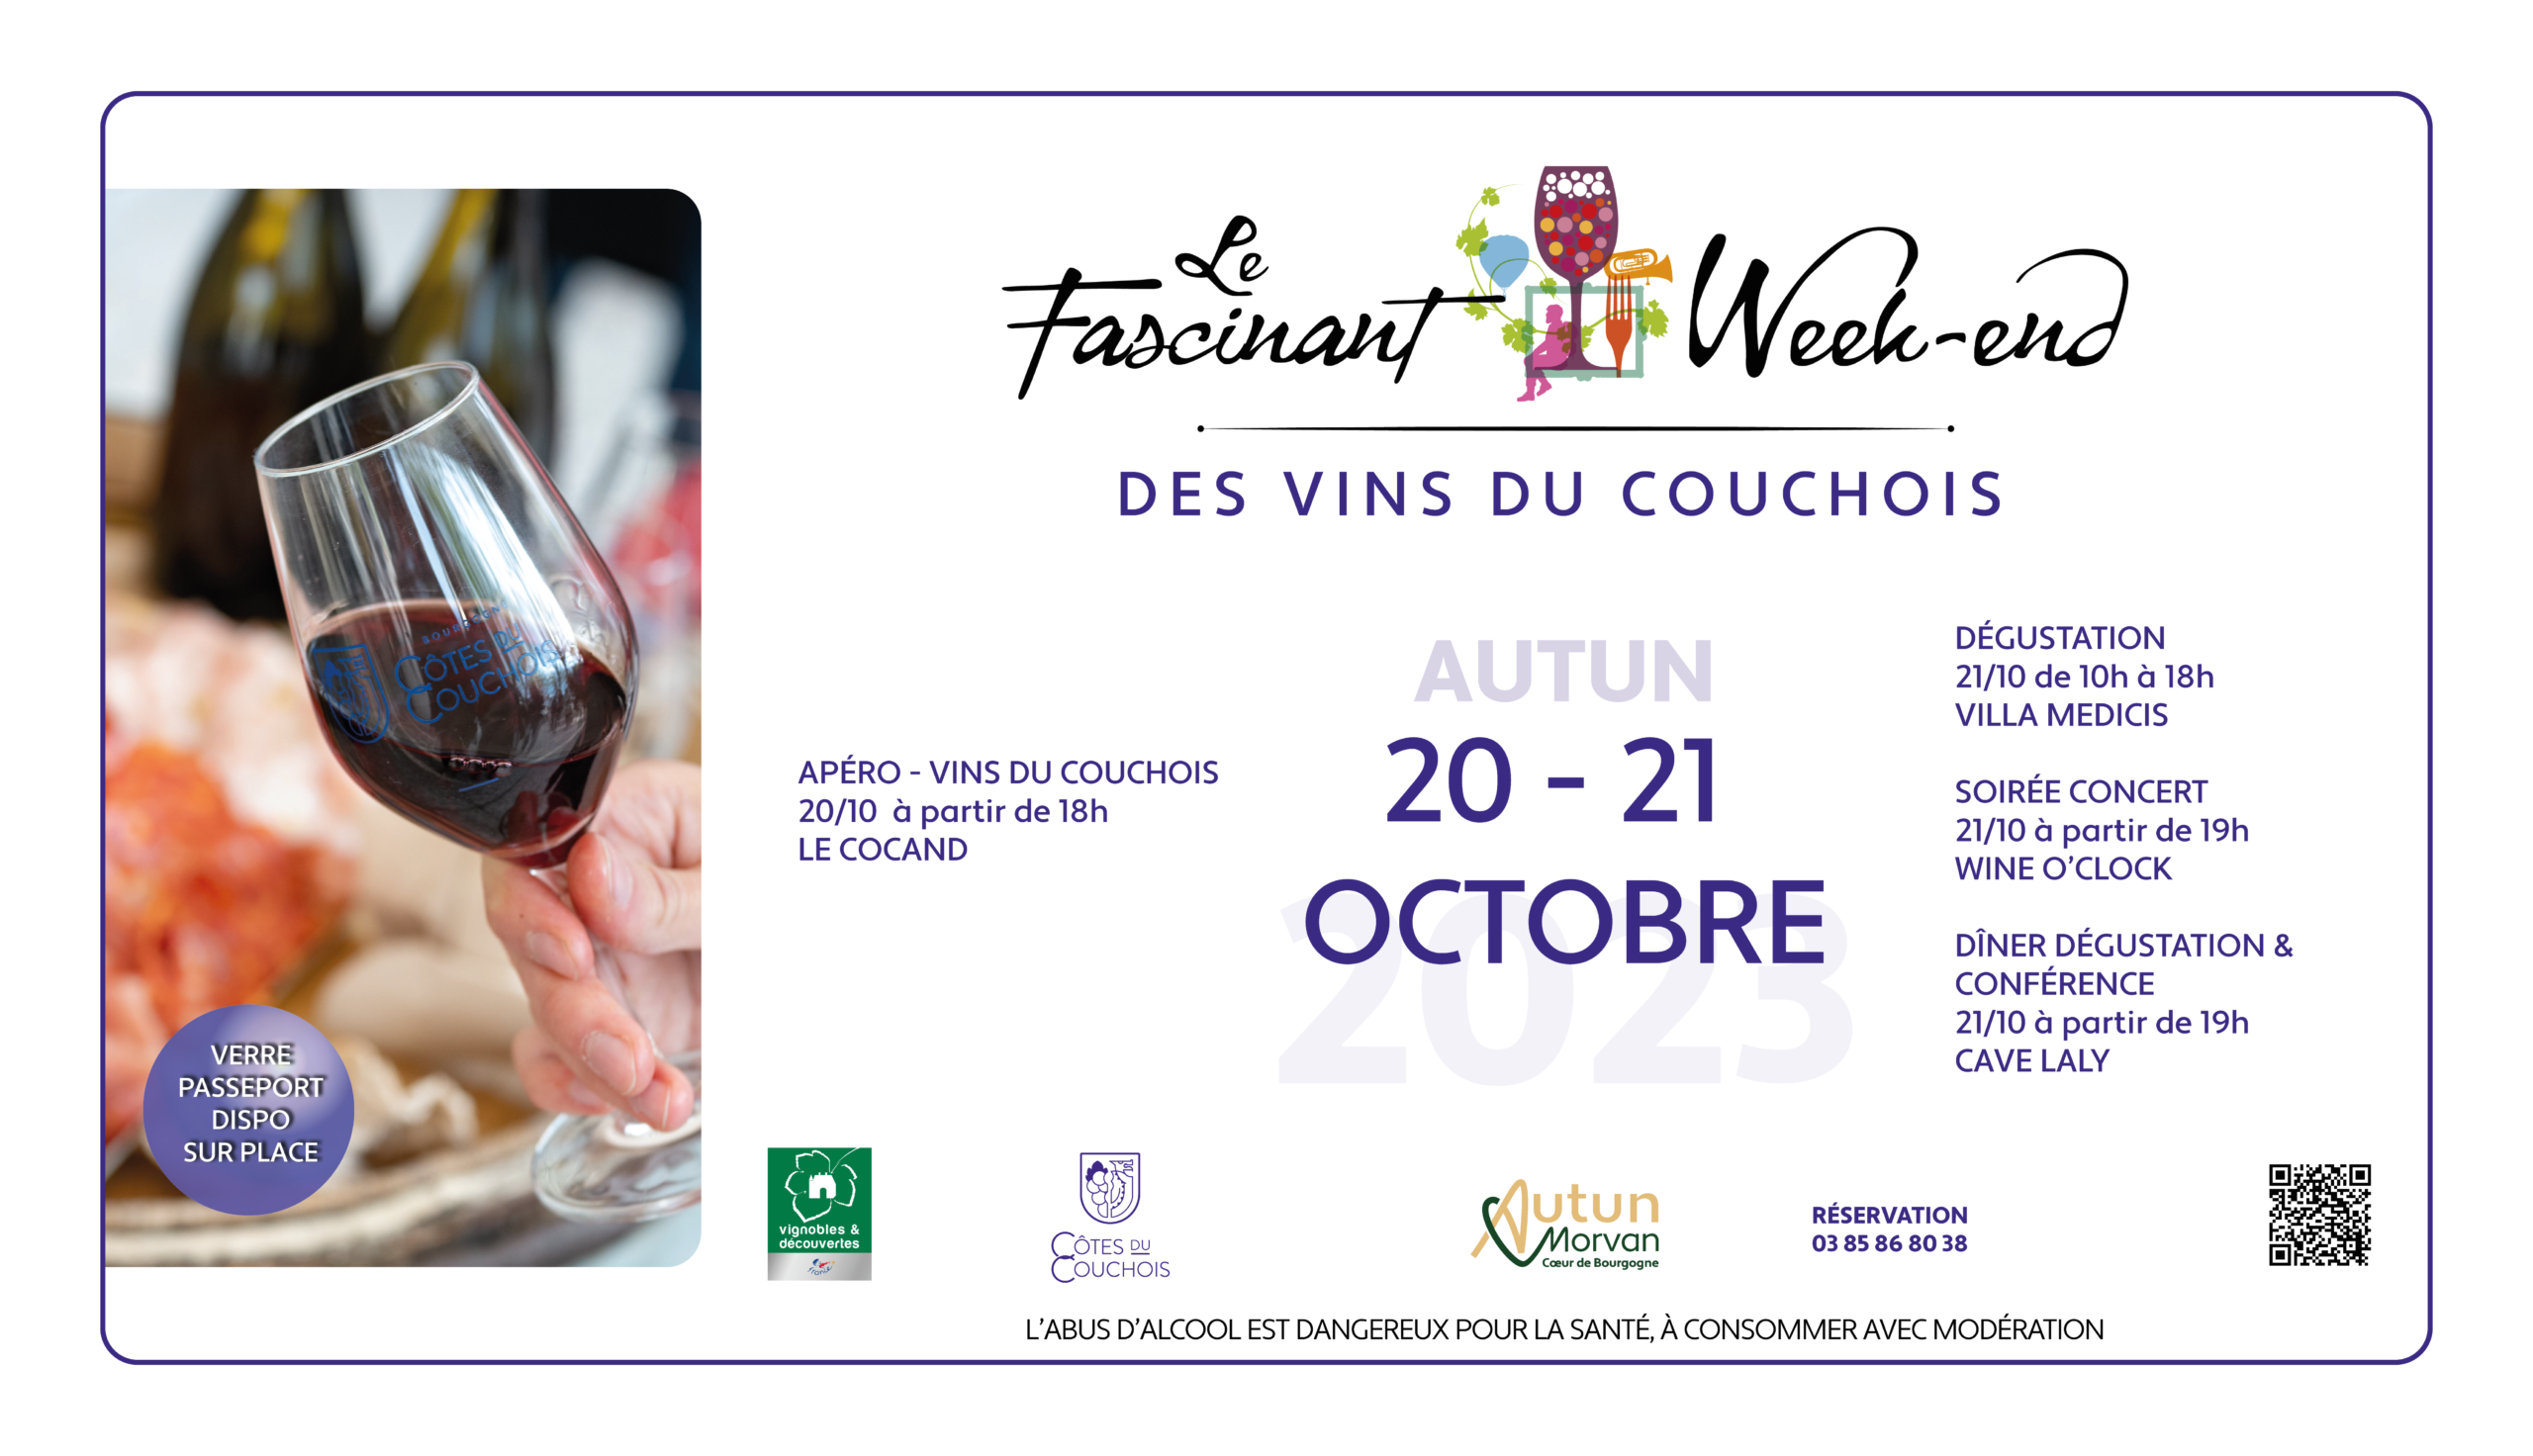 Découverte des vins du Couchois@OTAutun